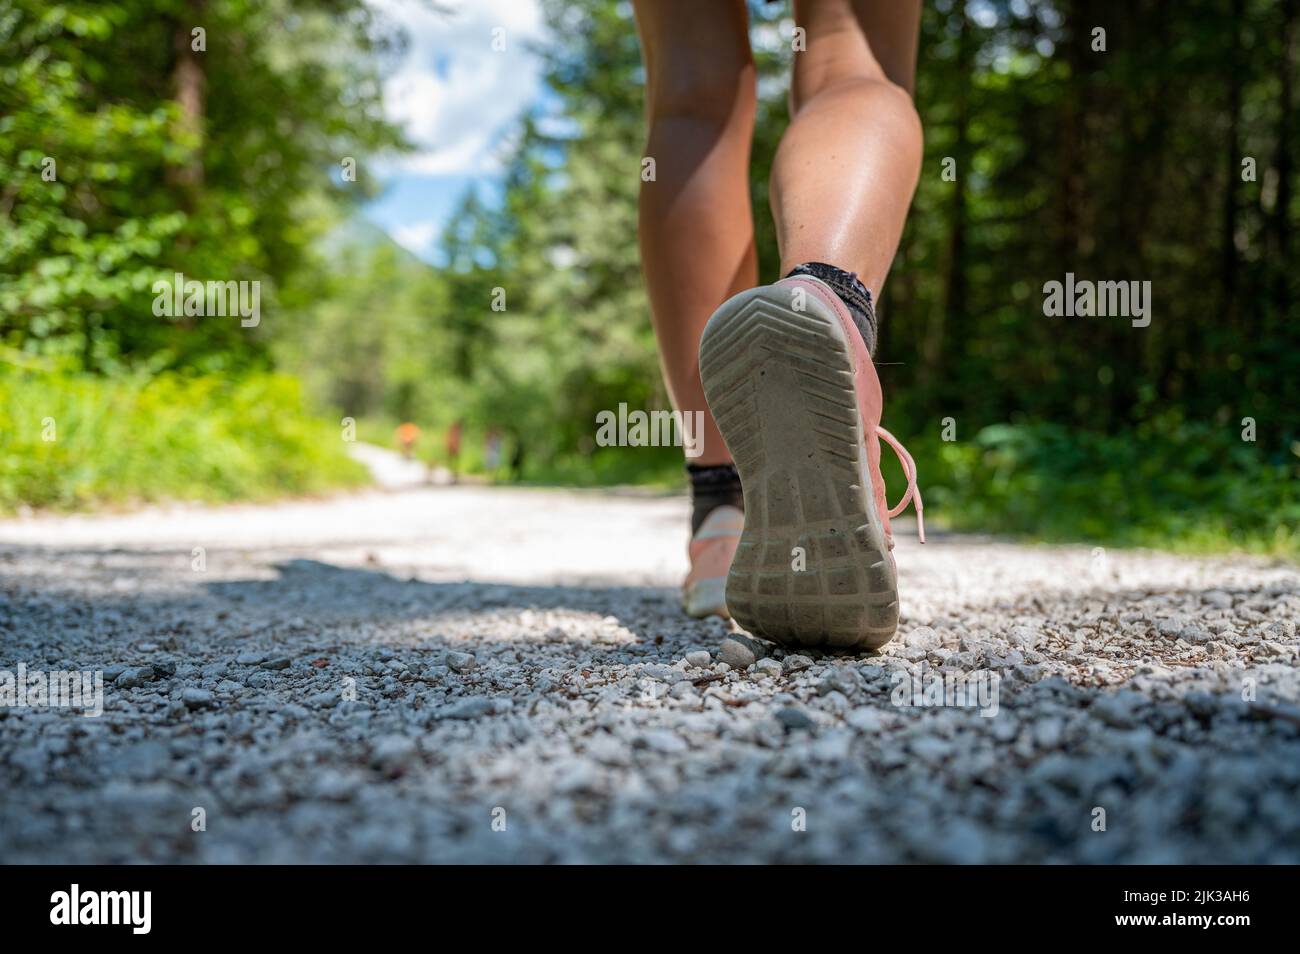 Vista de ángulo bajo de una suela de un zapato de mujer caucásica caminando o caminando por un camino en el bosque. Foto de stock